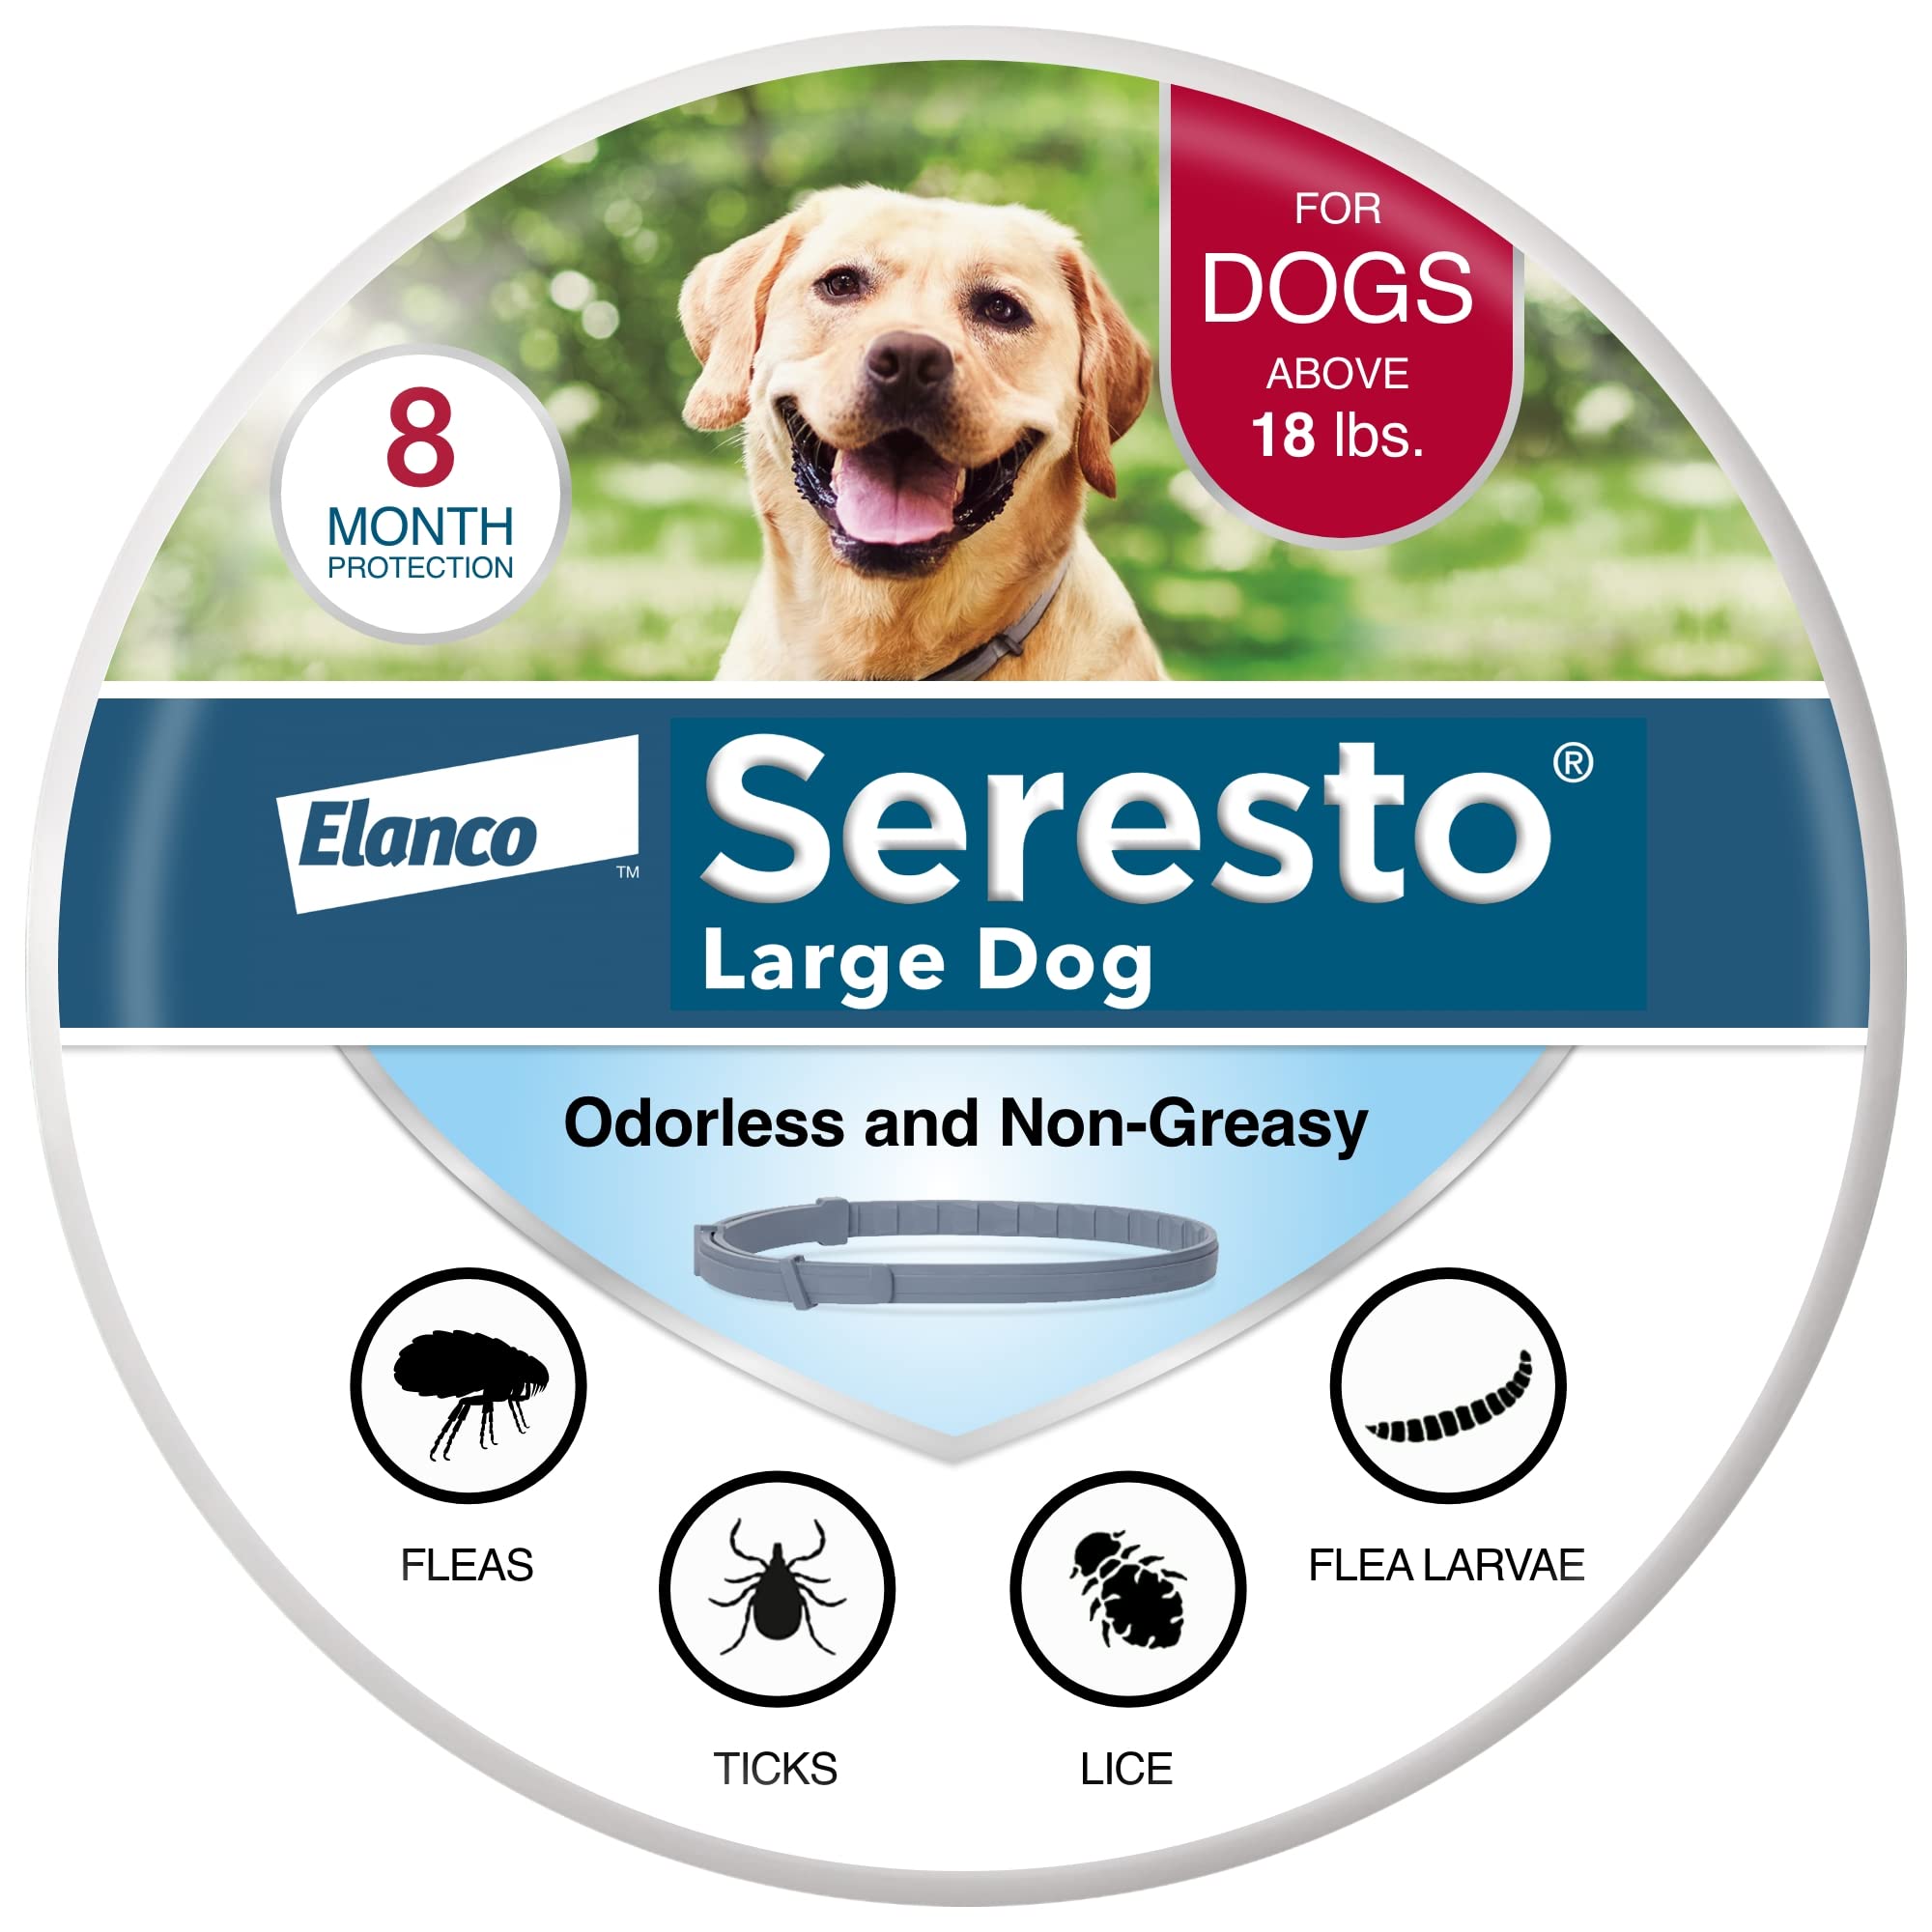 Seresto Coleira de prevenção e tratamento contra pulgas e carrapatos recomendada pelo veterinário para cães grandes para cães com mais de 18 libras. | 8 meses de proteção